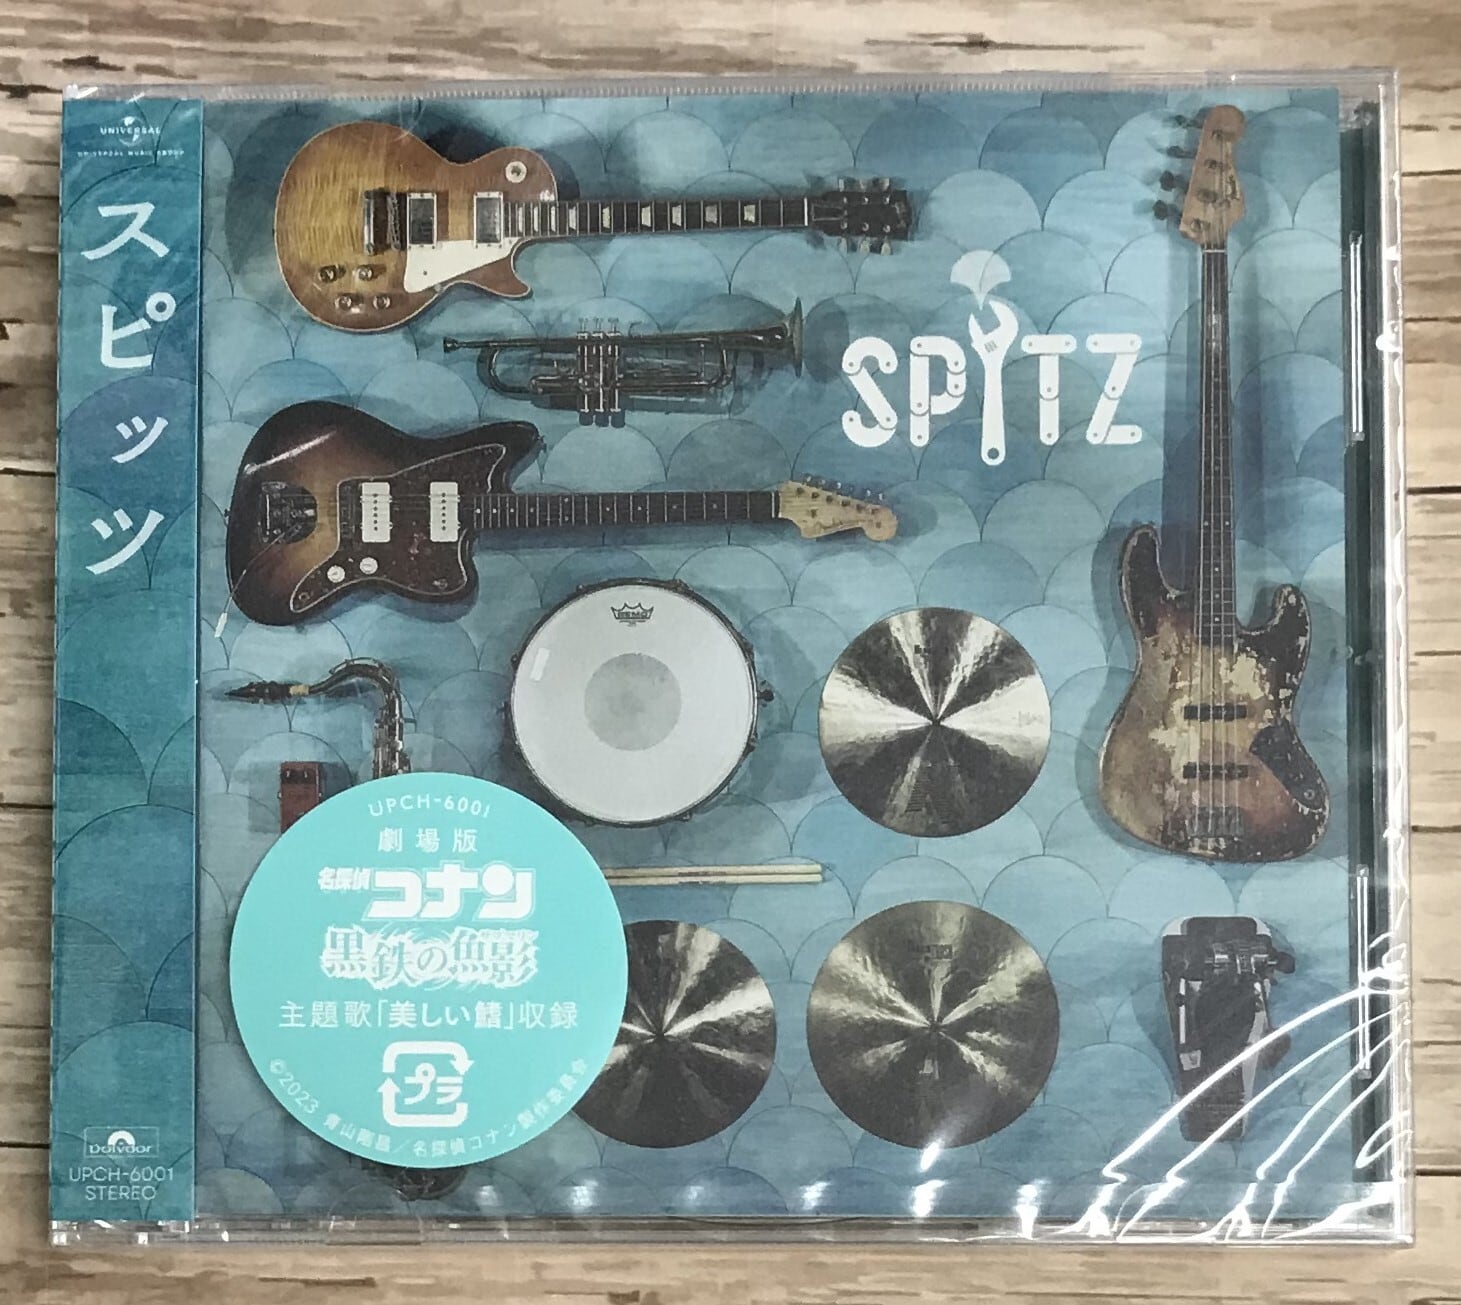 スピッツ / 2020 猫ちぐらの夕べ 初回限定盤 DVD+2CD 新品未開封品スピッツCD